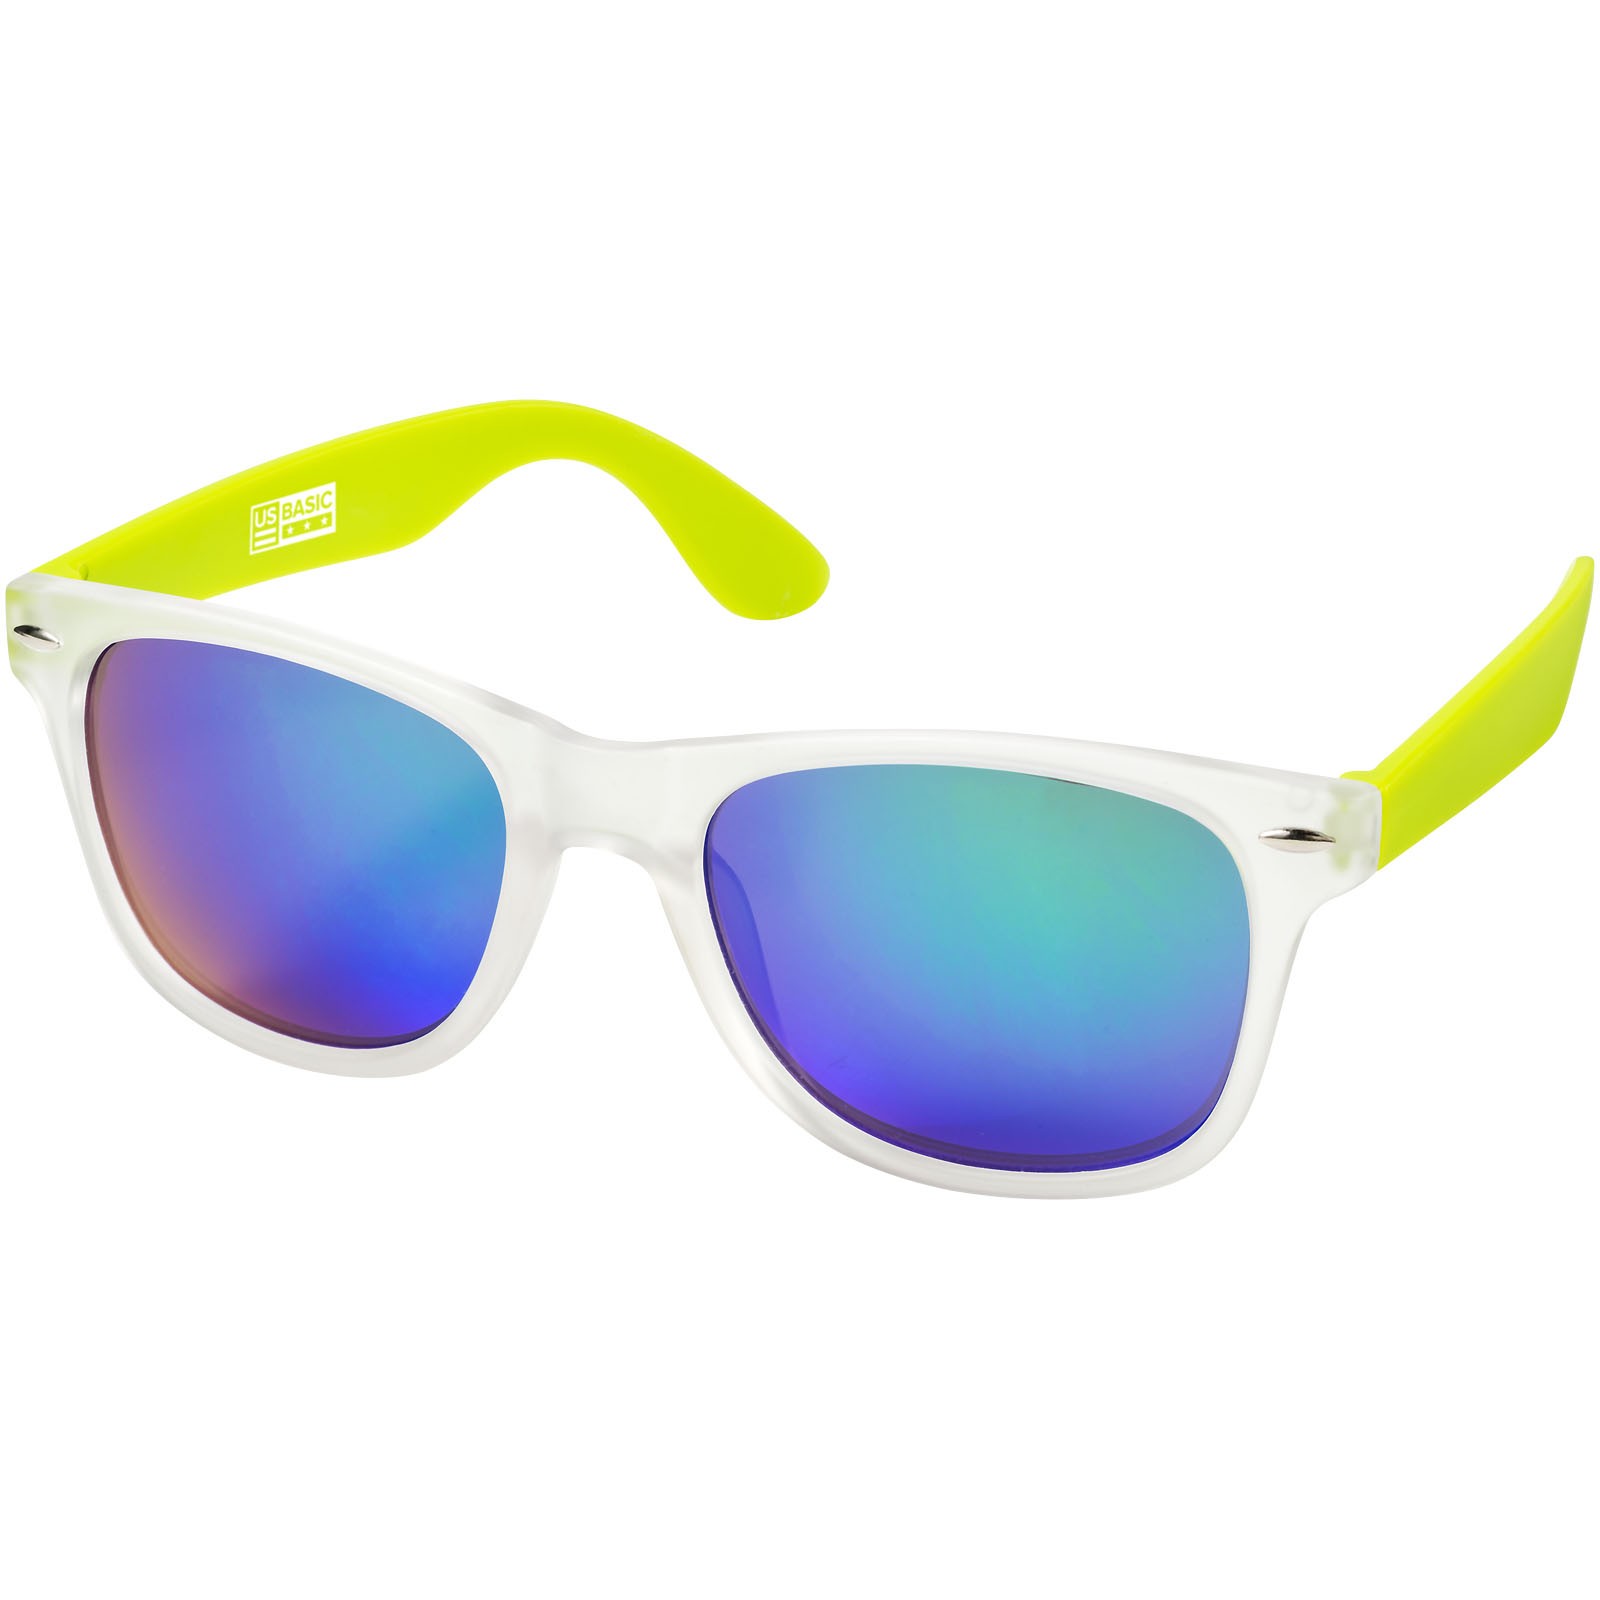 Sluneční brýle California s exkluzivním designem - Limetka / Průhledná